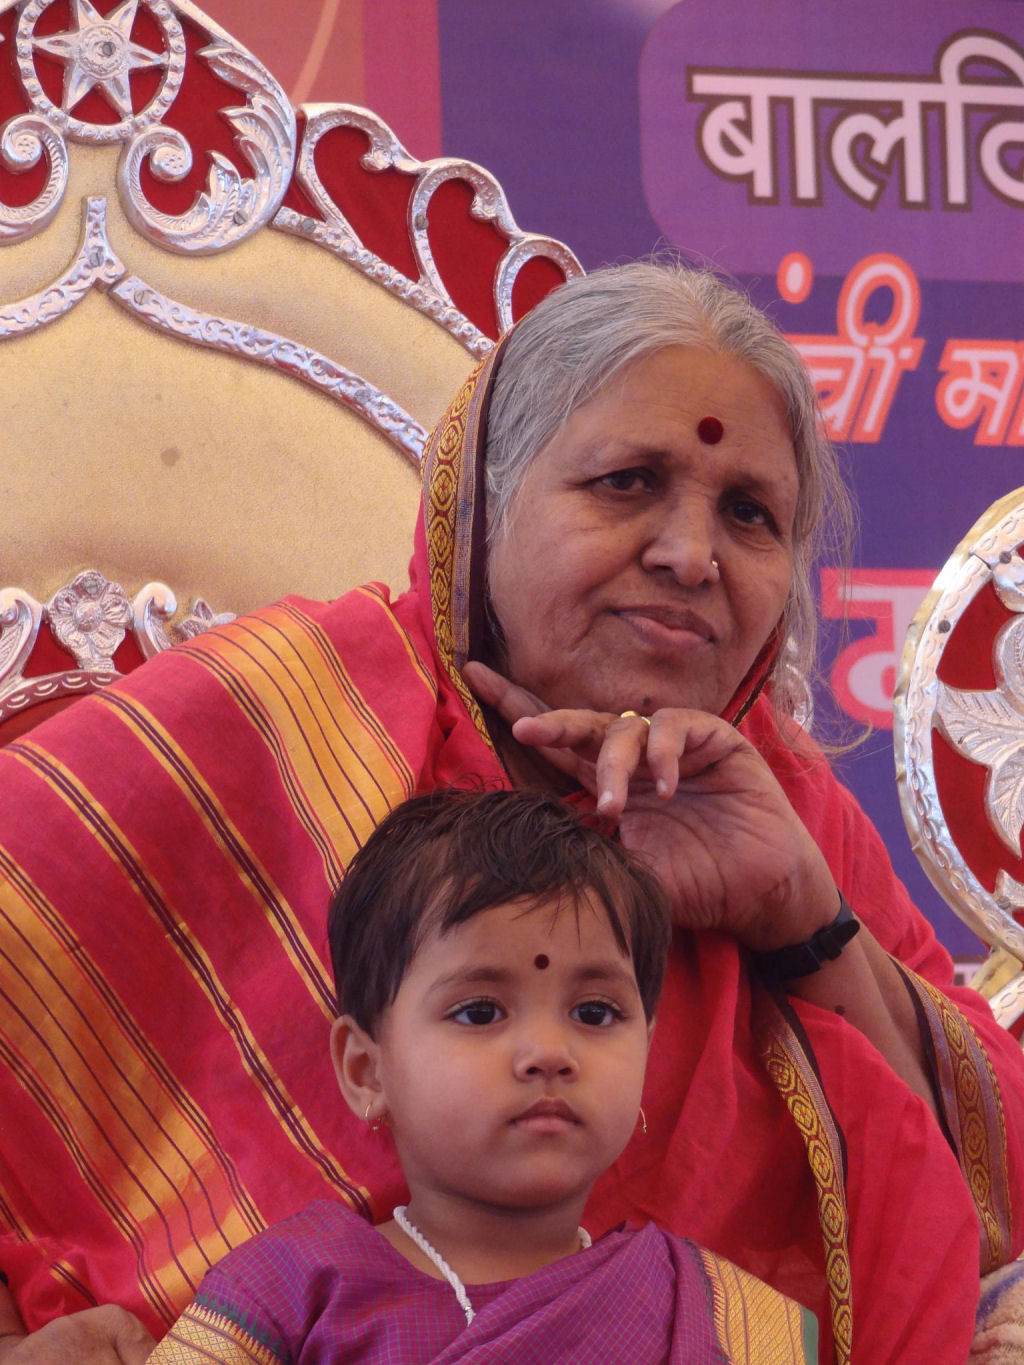 Mãe dos órfãos da Índia criou mais de 1.400 crianças abandonadas